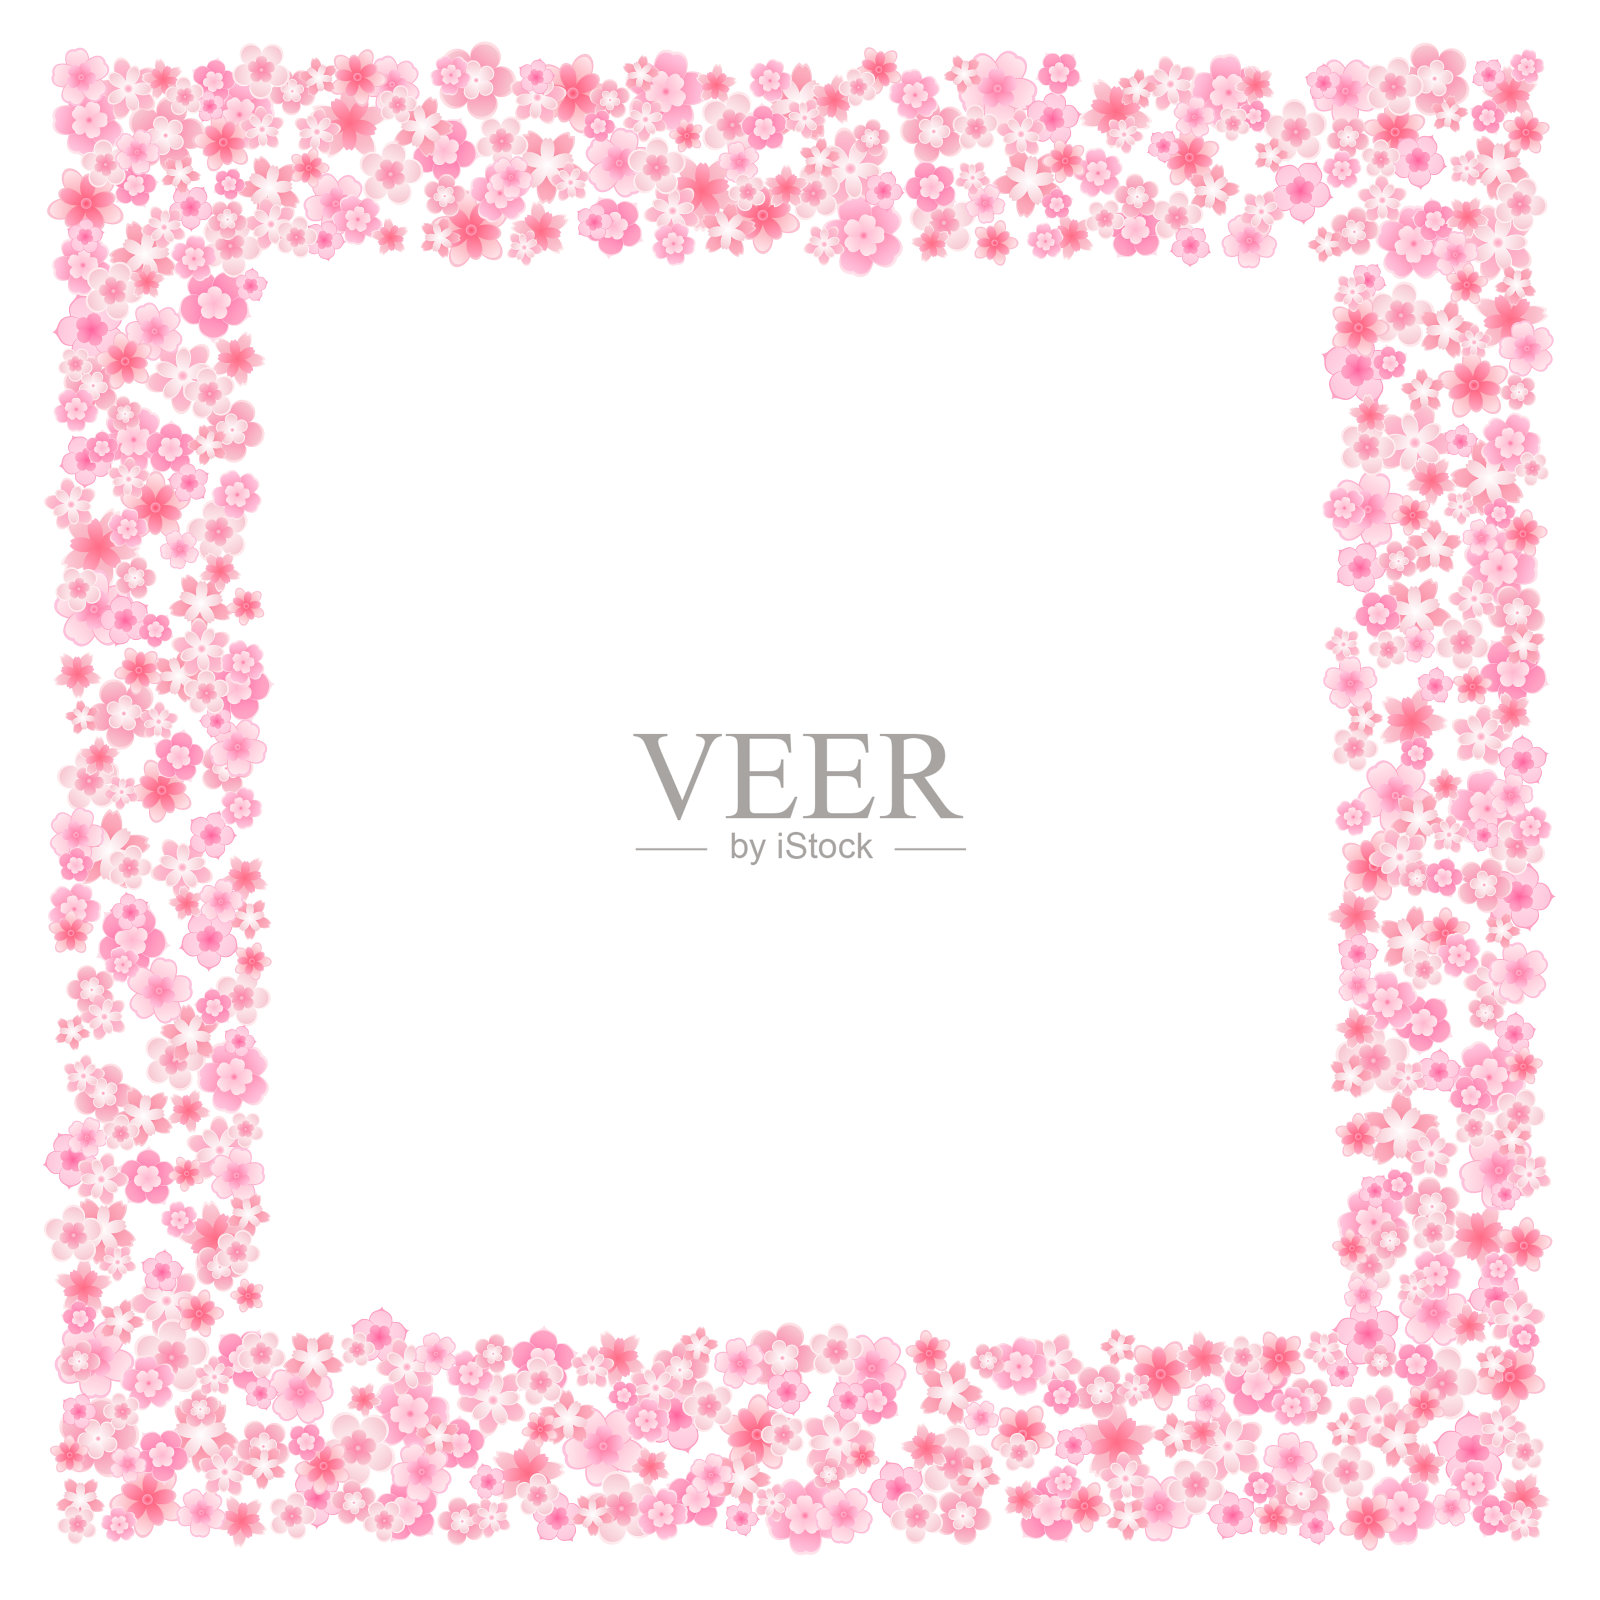 矢量花贺卡背景与粉红色的樱桃或樱花在平的风格插画图片素材